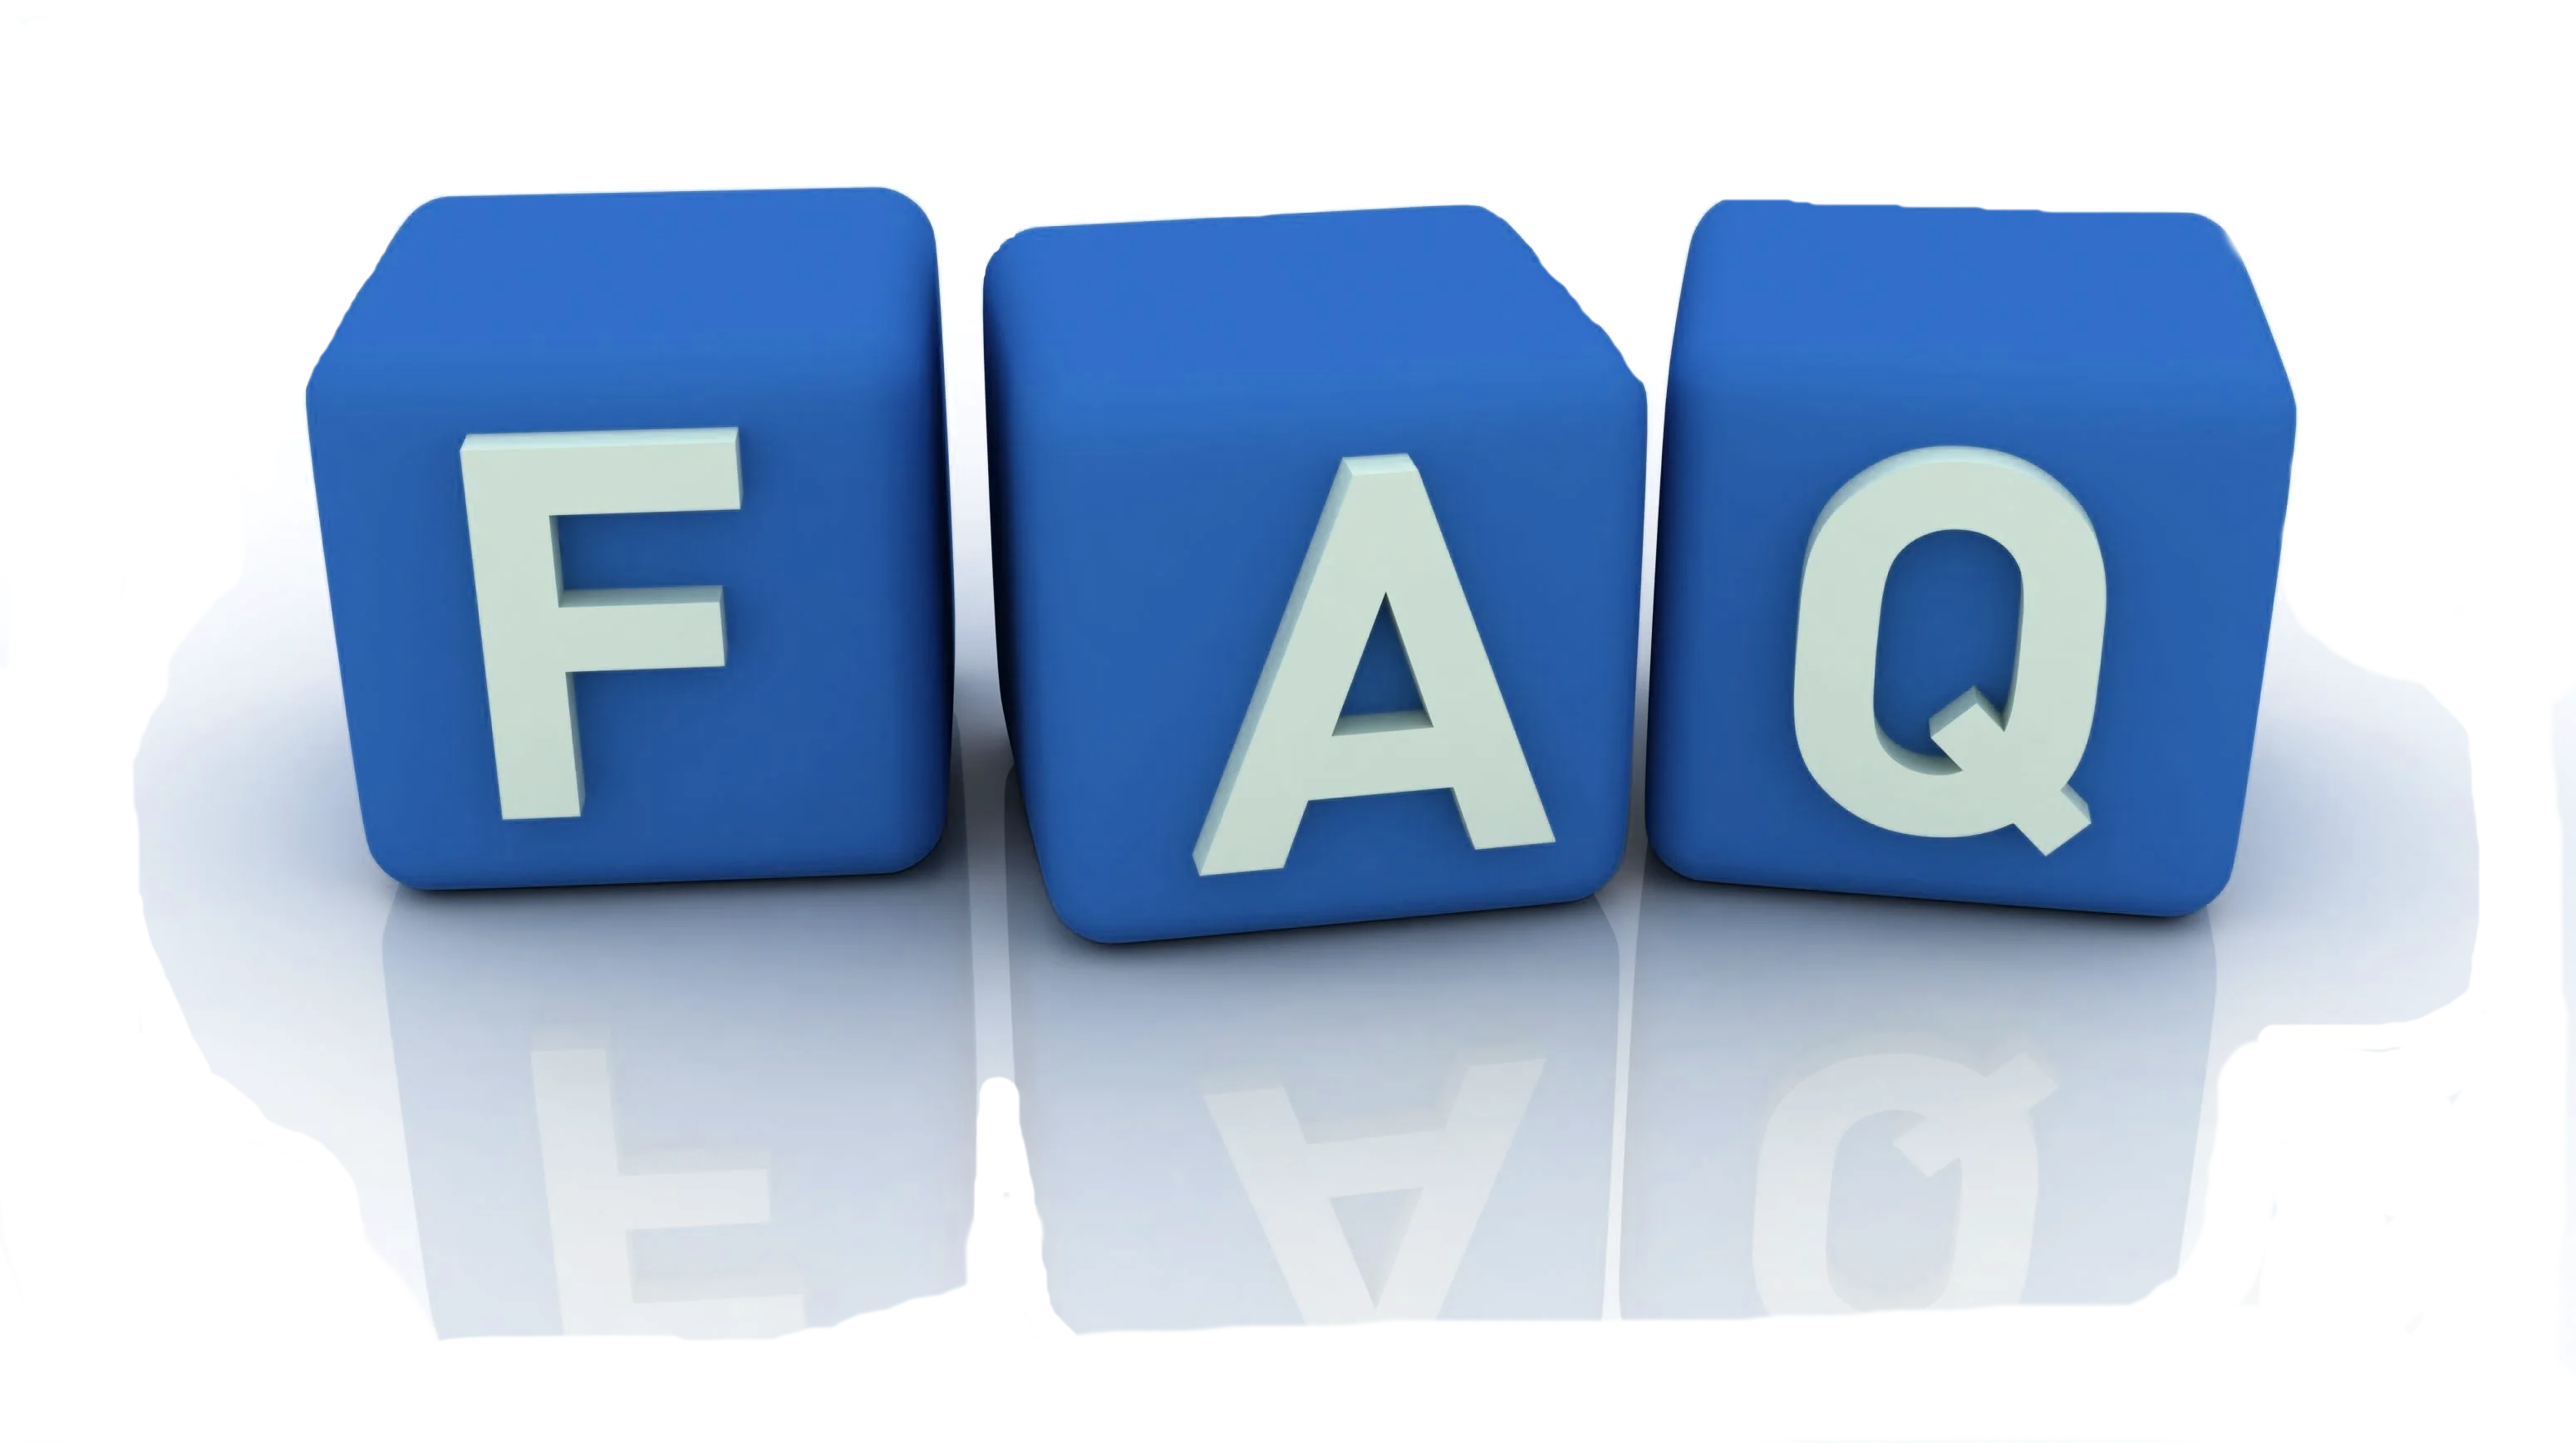 F a q 3. FAQ. FAQ картинка. FAQ на прозрачном фоне. Картинка f.a.q.